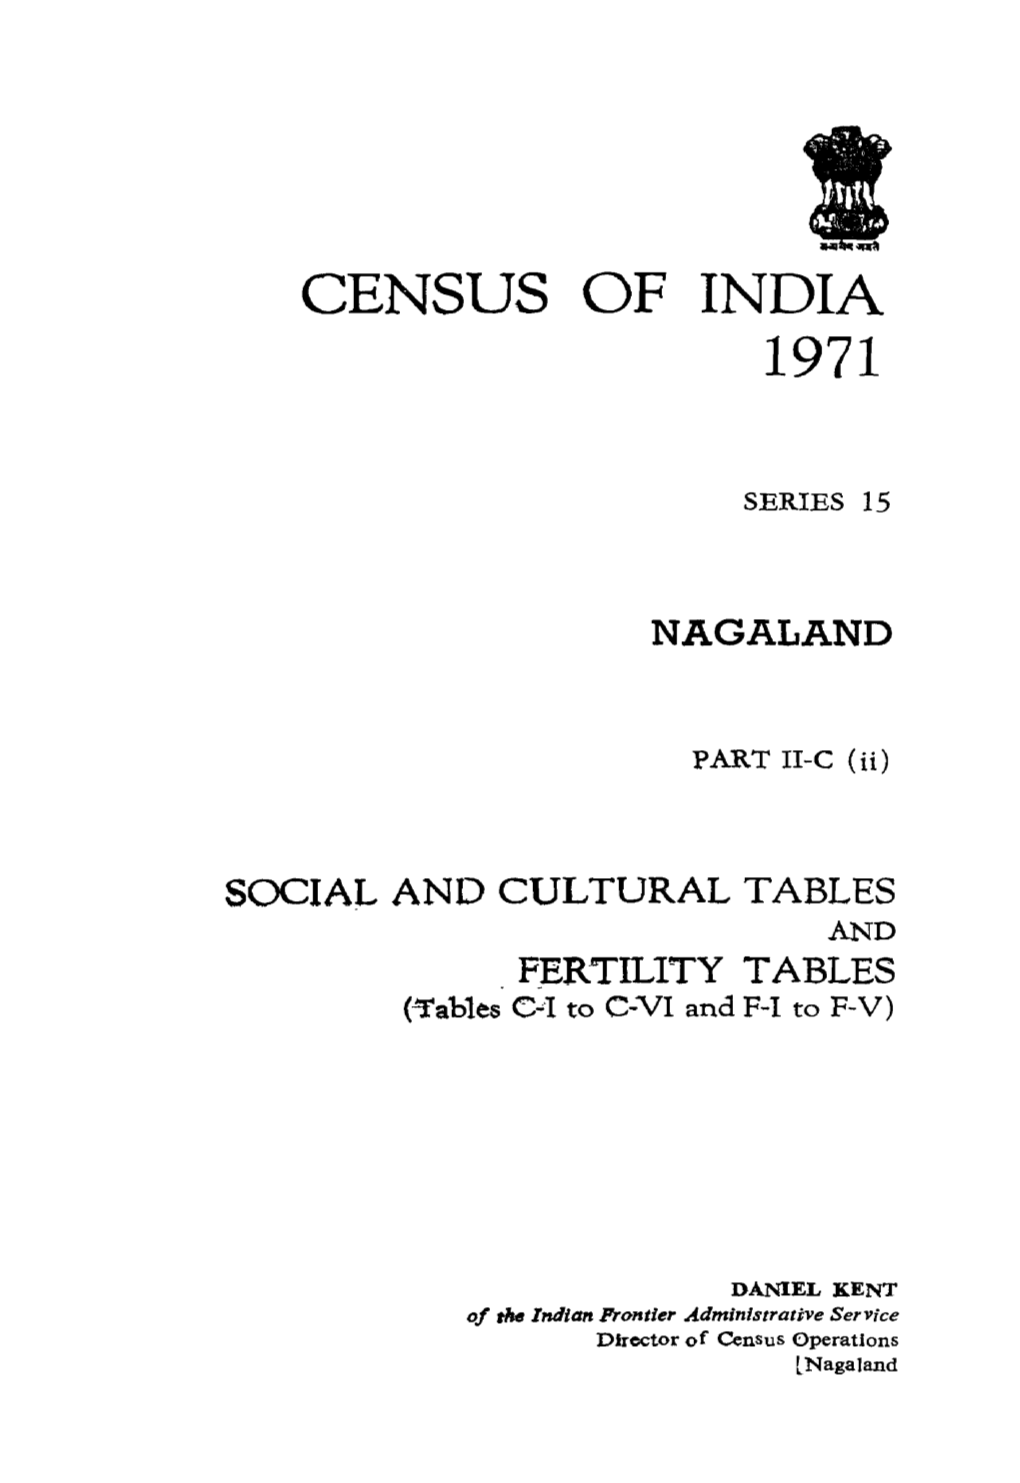 Social and Cultural Tables and Fertility Tables (Tables C-I to C-VI and F-I to F-V) (Present Volume) Pailtii-D Migration Tables Pailtill